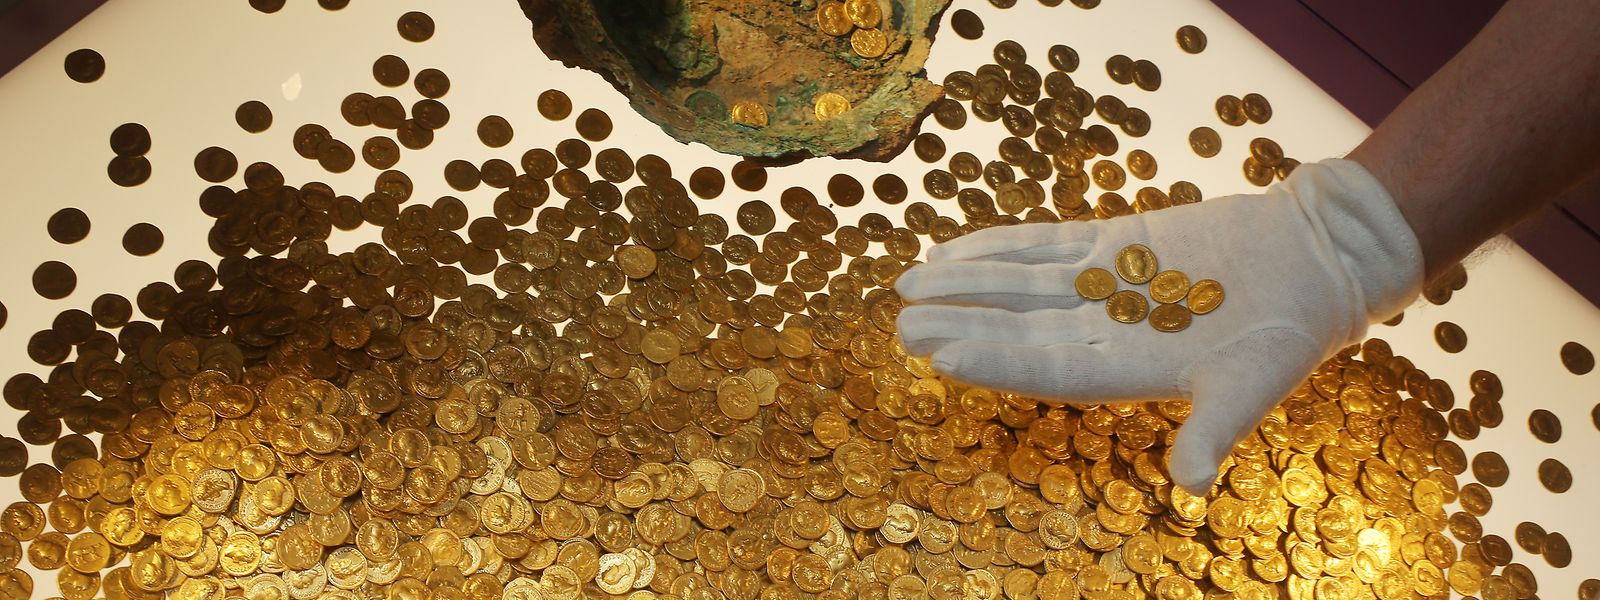 Trier: Der Numismatiker Karl-Josef Gilles platziert im Landesmuseum römische Goldmünzen in einer Vitrine. Es handelt sich um den weltweit größte Goldschatz der römischen Kaiserzeit: 18,5 Kilogramm schwer und rund 2600 Münzen stark. Vor 25 Jahren wurde er in Trier entdeckt.